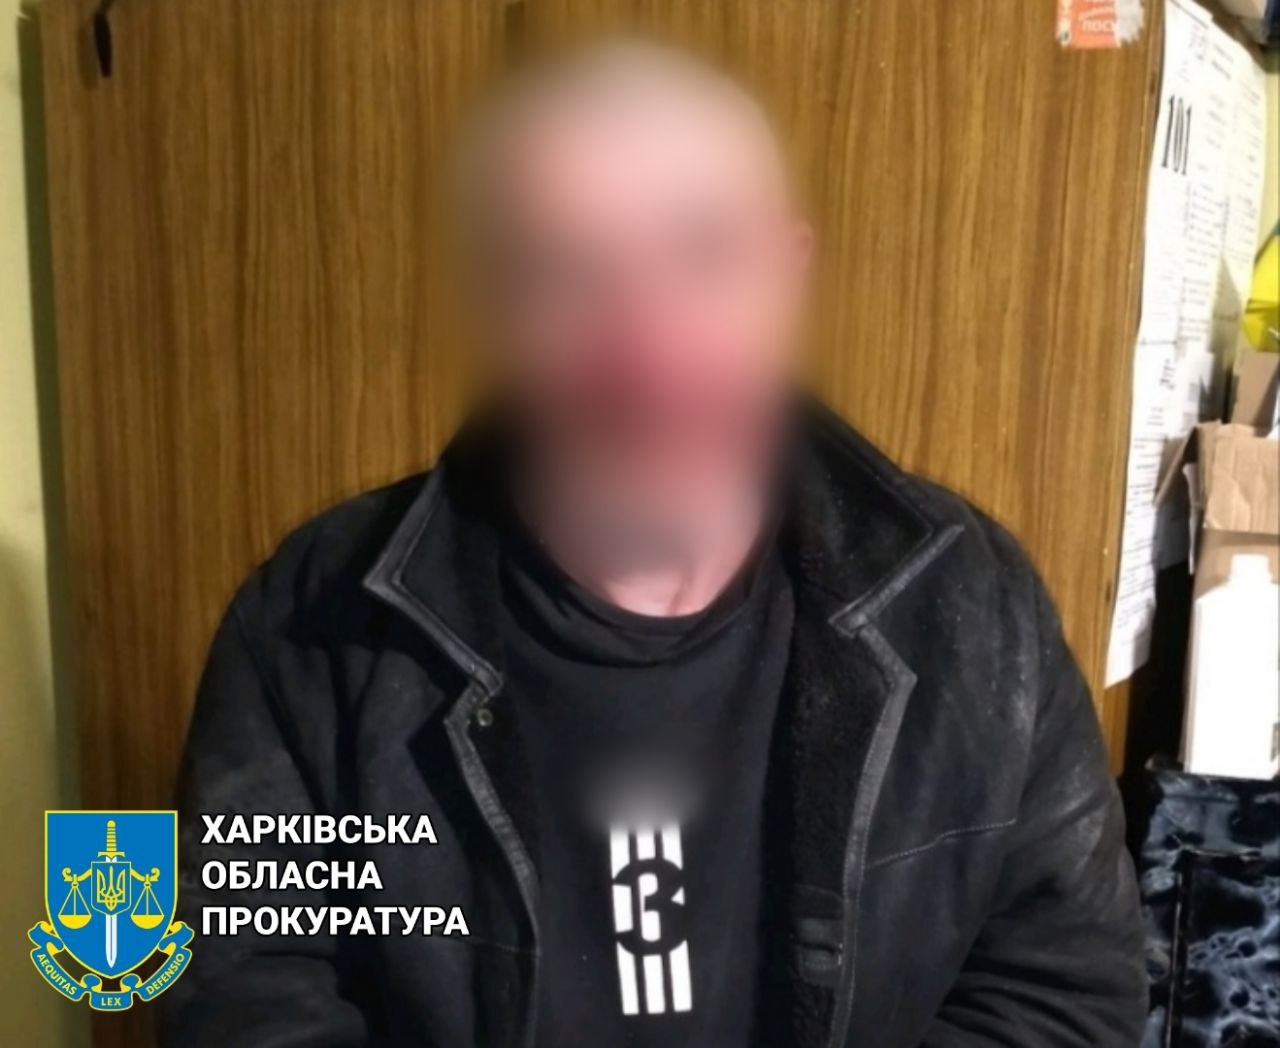 Криминал Харьков: Ждет суда обокравший аптеку вор и дебошир